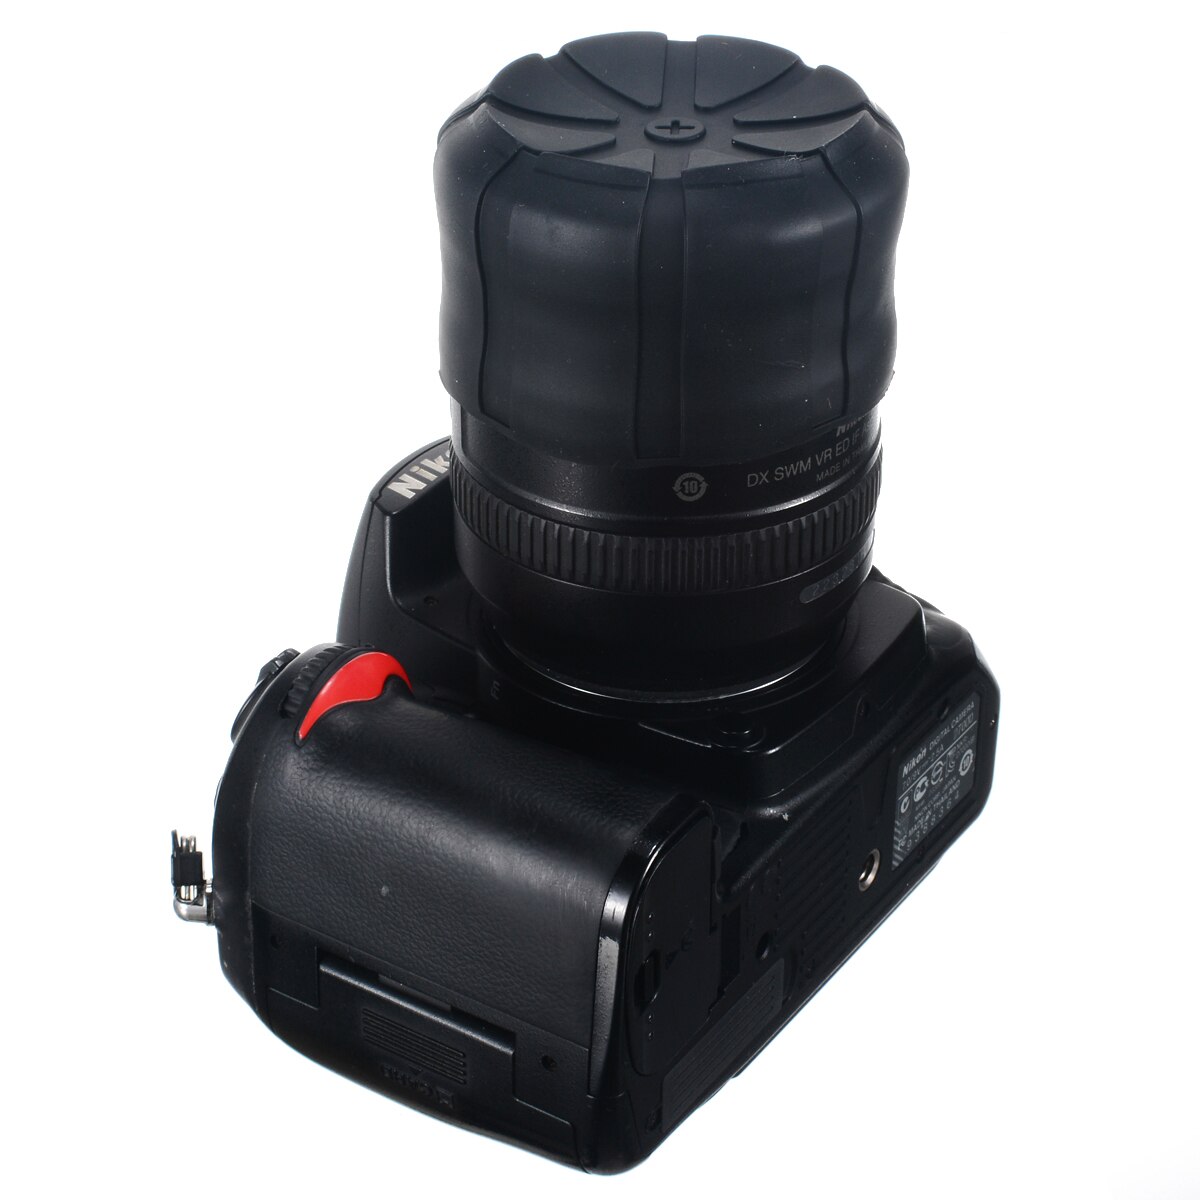 Vandtæt silikone universal objektivdæksel til 60-110mm dslr kameralinser